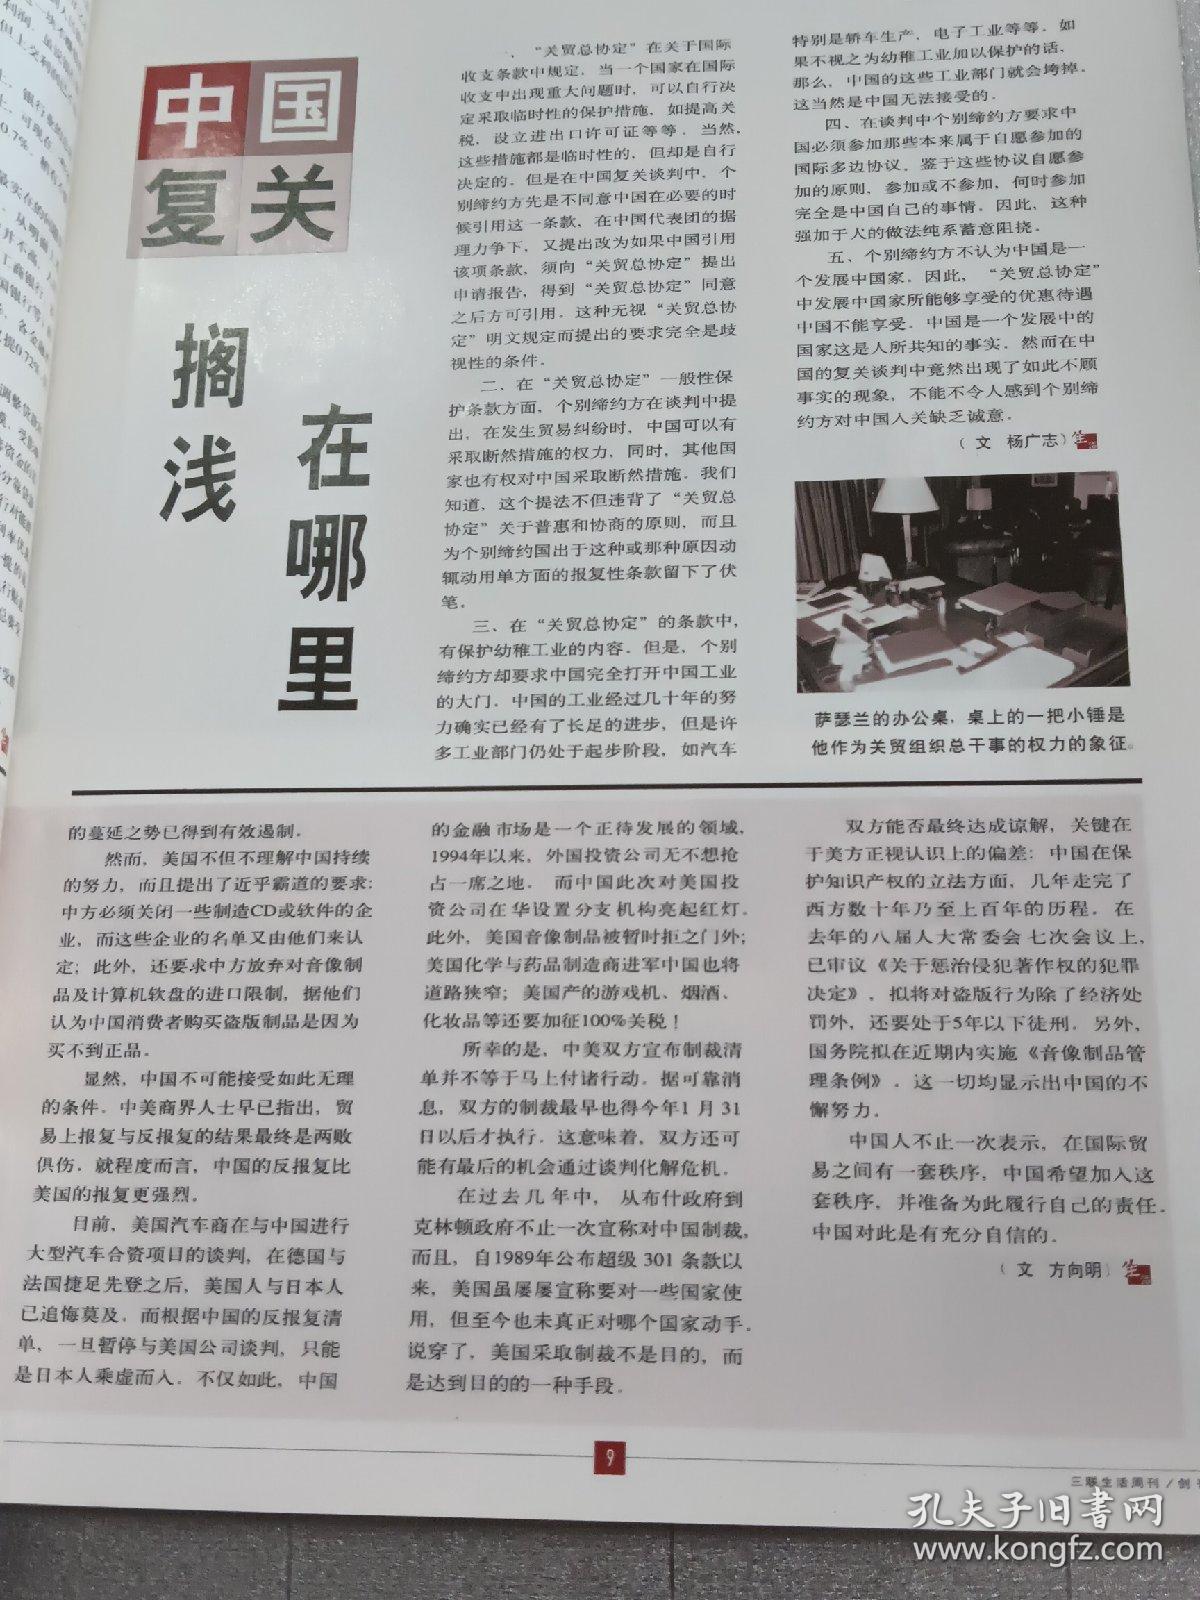 三联生活周刊 创刊号 1995.1.14。